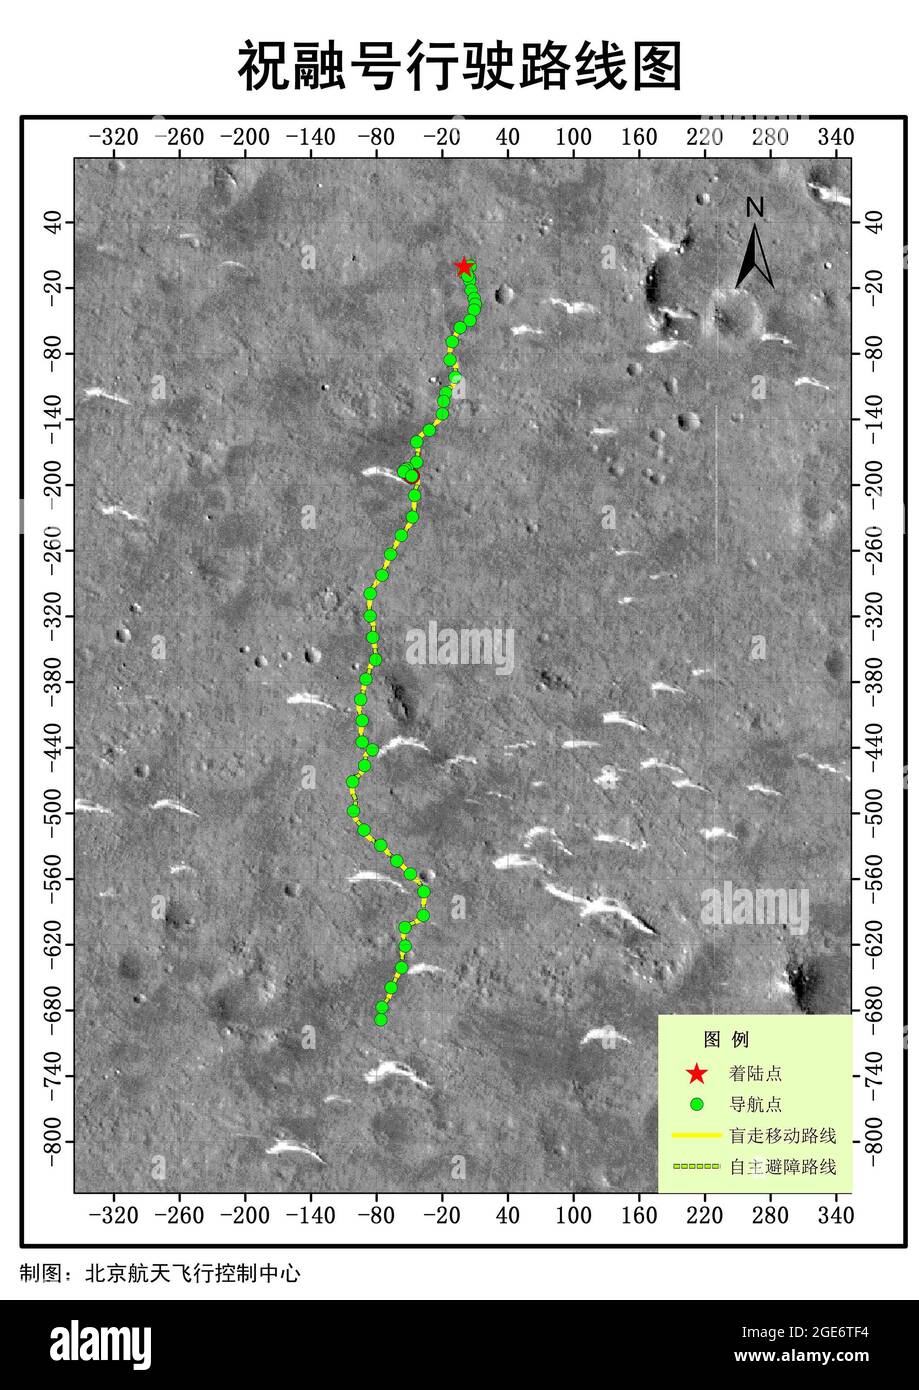 (210817) -- PEKING, 17. August 2021 (Xinhua) -- das Bild zeigt die Straßenkarte von Chinas Mars-Rover Zhurong. Der chinesische Mars-Rover Zhurong hat seine Explorations- und Detektionsaufgaben wie geplant erfüllt, so die China National Space Administration (CNSA) am Dienstag. Am 15. August 2021 habe Zhurong 90 Marstage lang auf der Oberfläche des Mars gearbeitet, das sind etwa 92 Tage auf der Erde, wobei alle wissenschaftlichen Nutzlasten damit begonnen hätten, an Detektionsaufgaben zu arbeiten, sagte die Verwaltung. Die CNSA fügte hinzu, dass der Rover weiterhin in die Grenzzone zwischen dem alten Meer und dem alten Land in zu bewegen Stockfoto